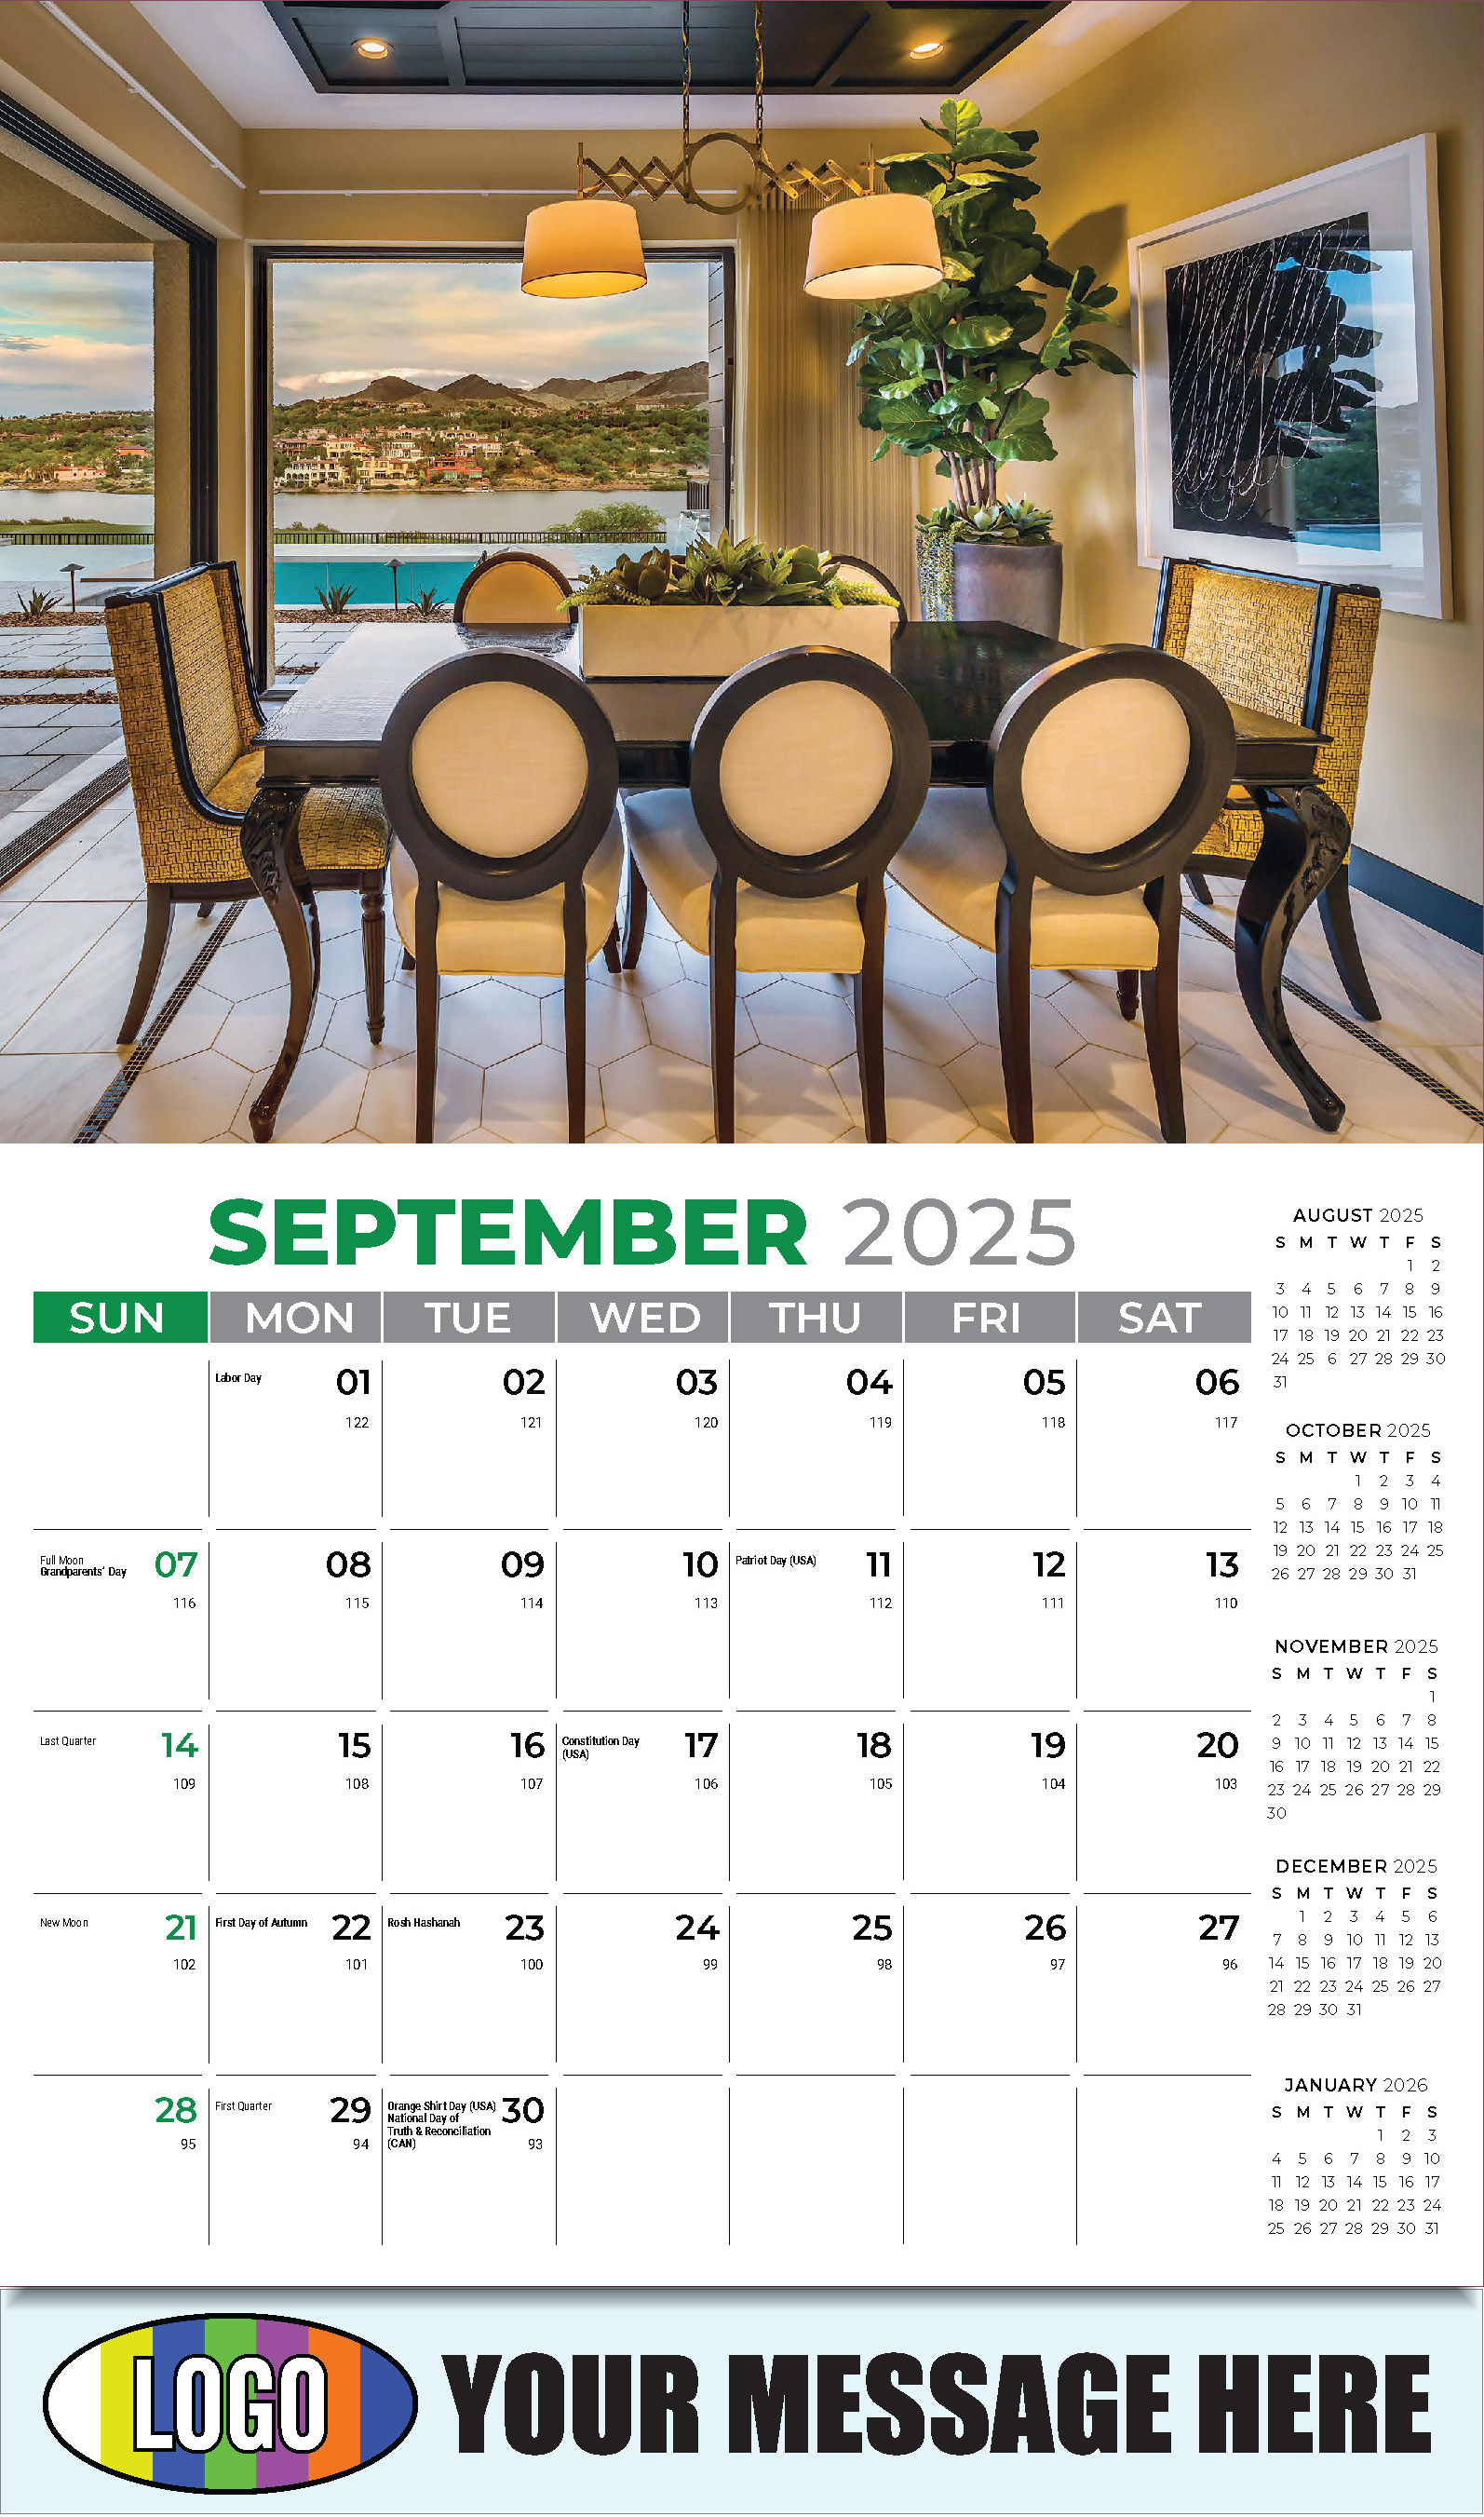 Decor and Design 2025 Interior Design Business Promotional Calendar - September